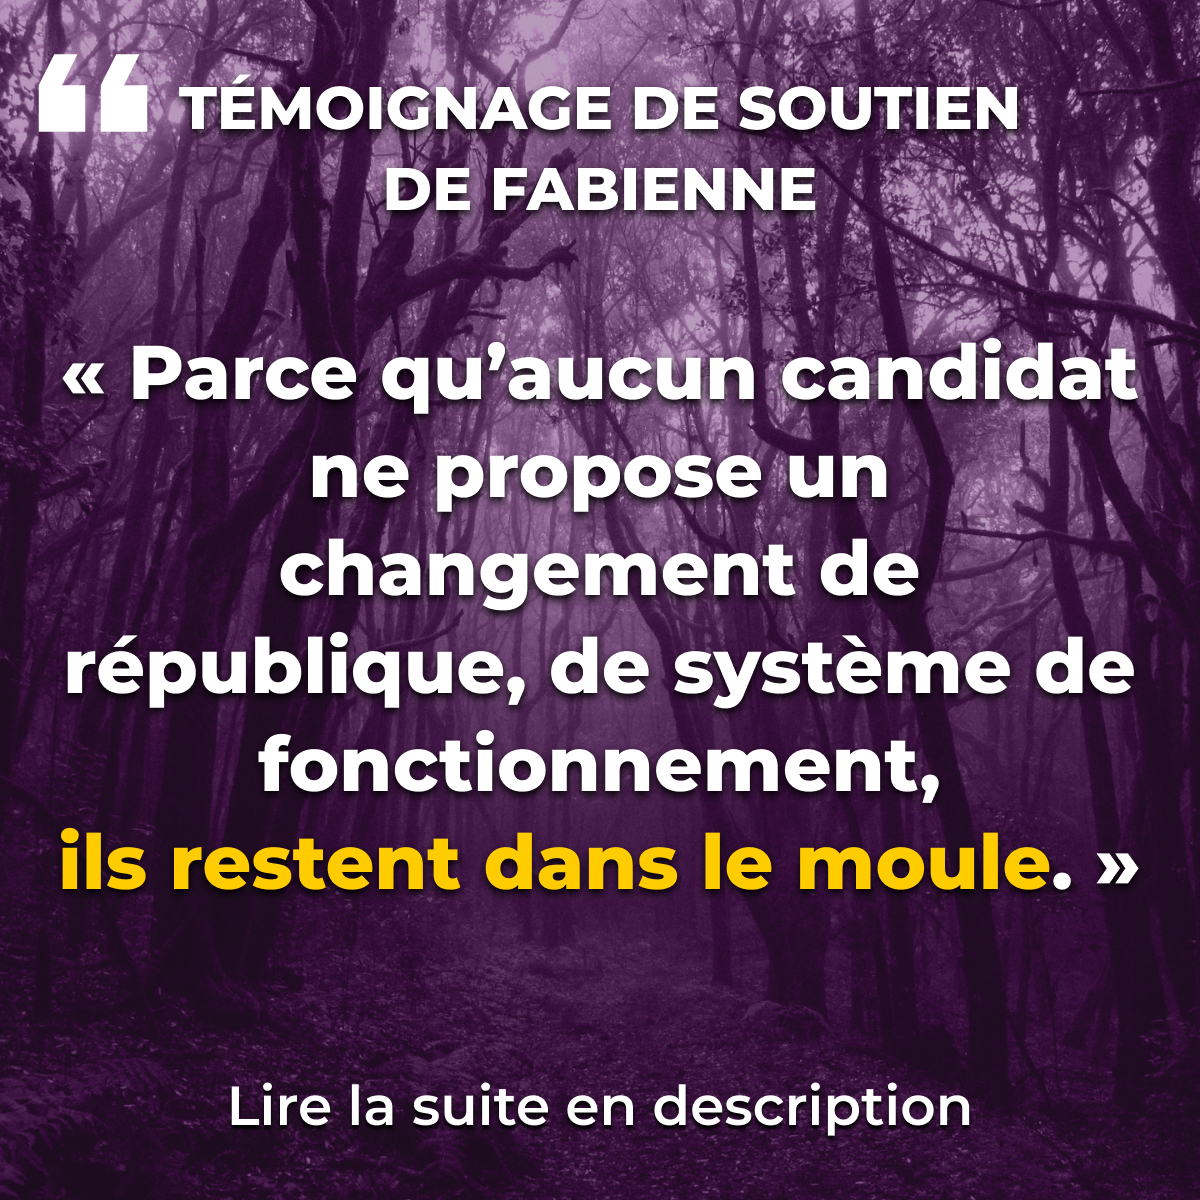 “Parce qu’aucun candidat ne propose un changement de république, de système de fonctionnement, ils restent dans le moule.”